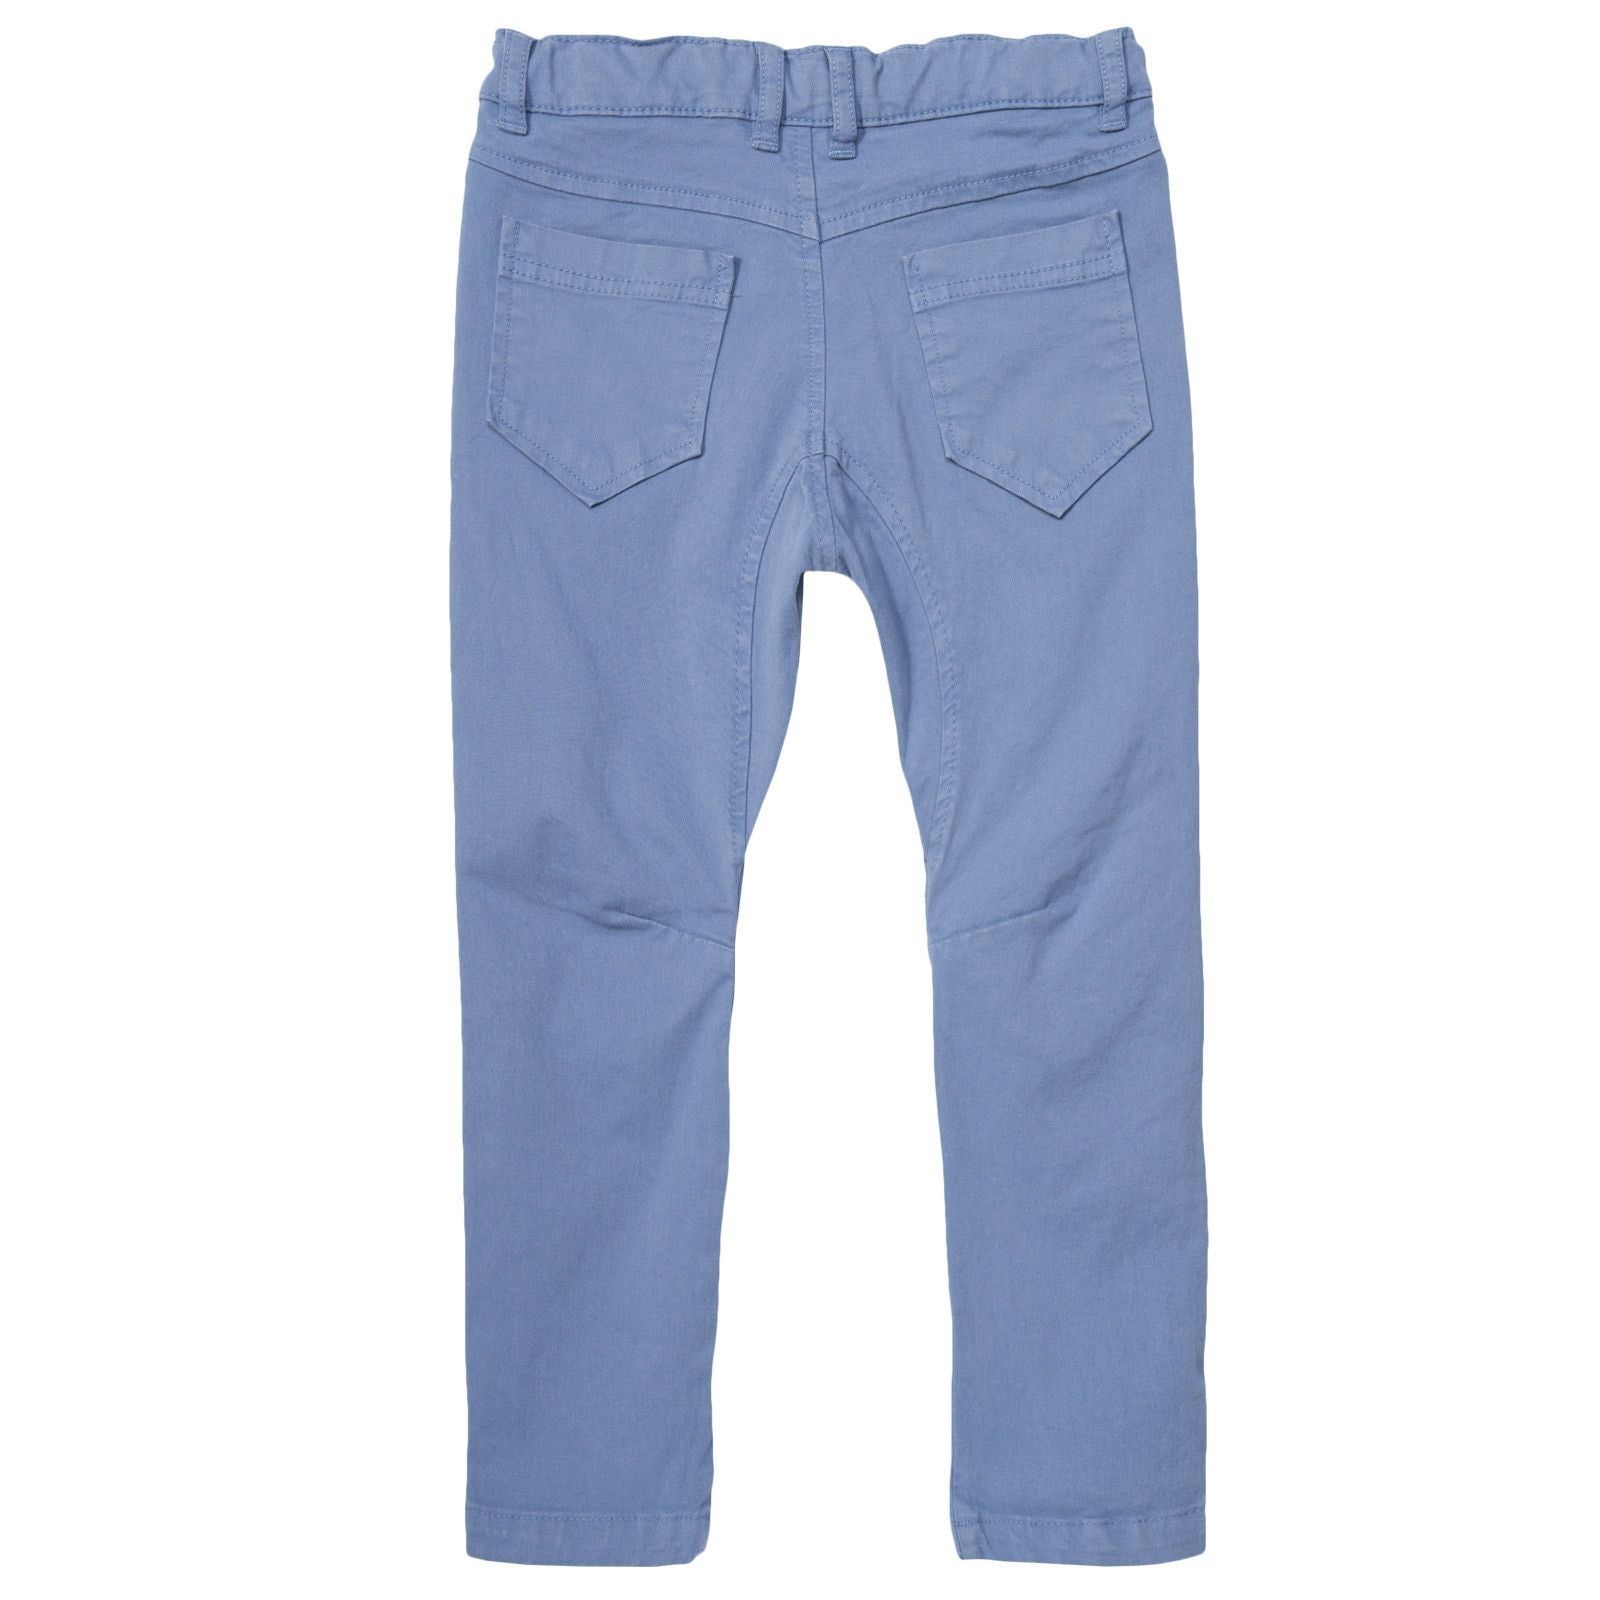 Boys Blue Slim Fit Cotton Trousers - CÉMAROSE | Children's Fashion Store - 2